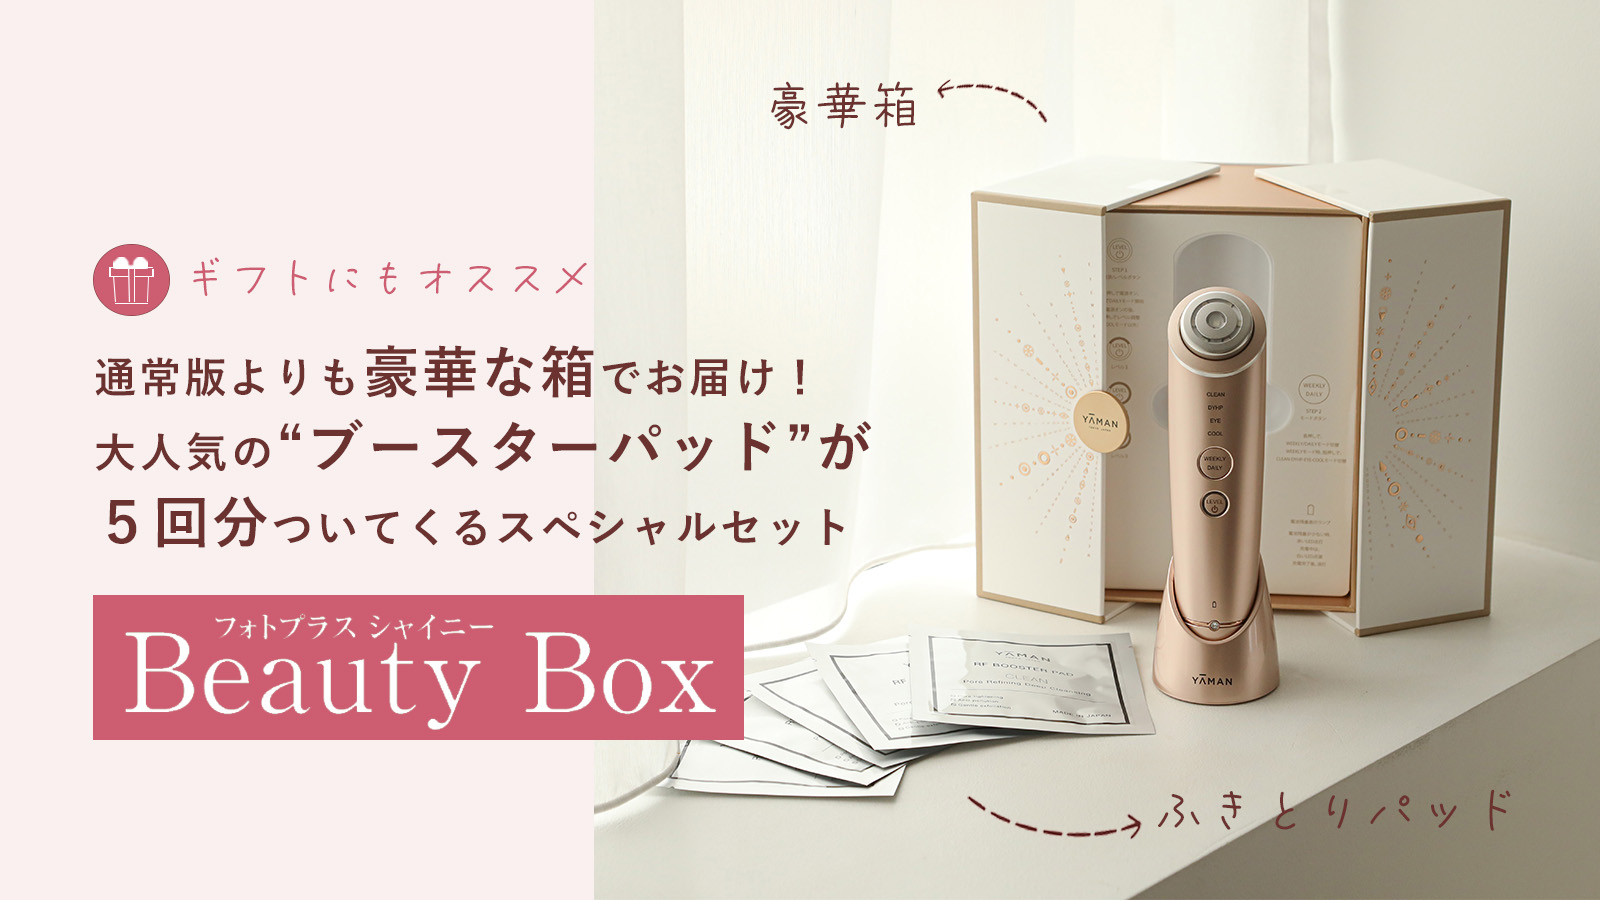 【正規販売店】YA-MAN フォトプラス シャイニー BeautyBox